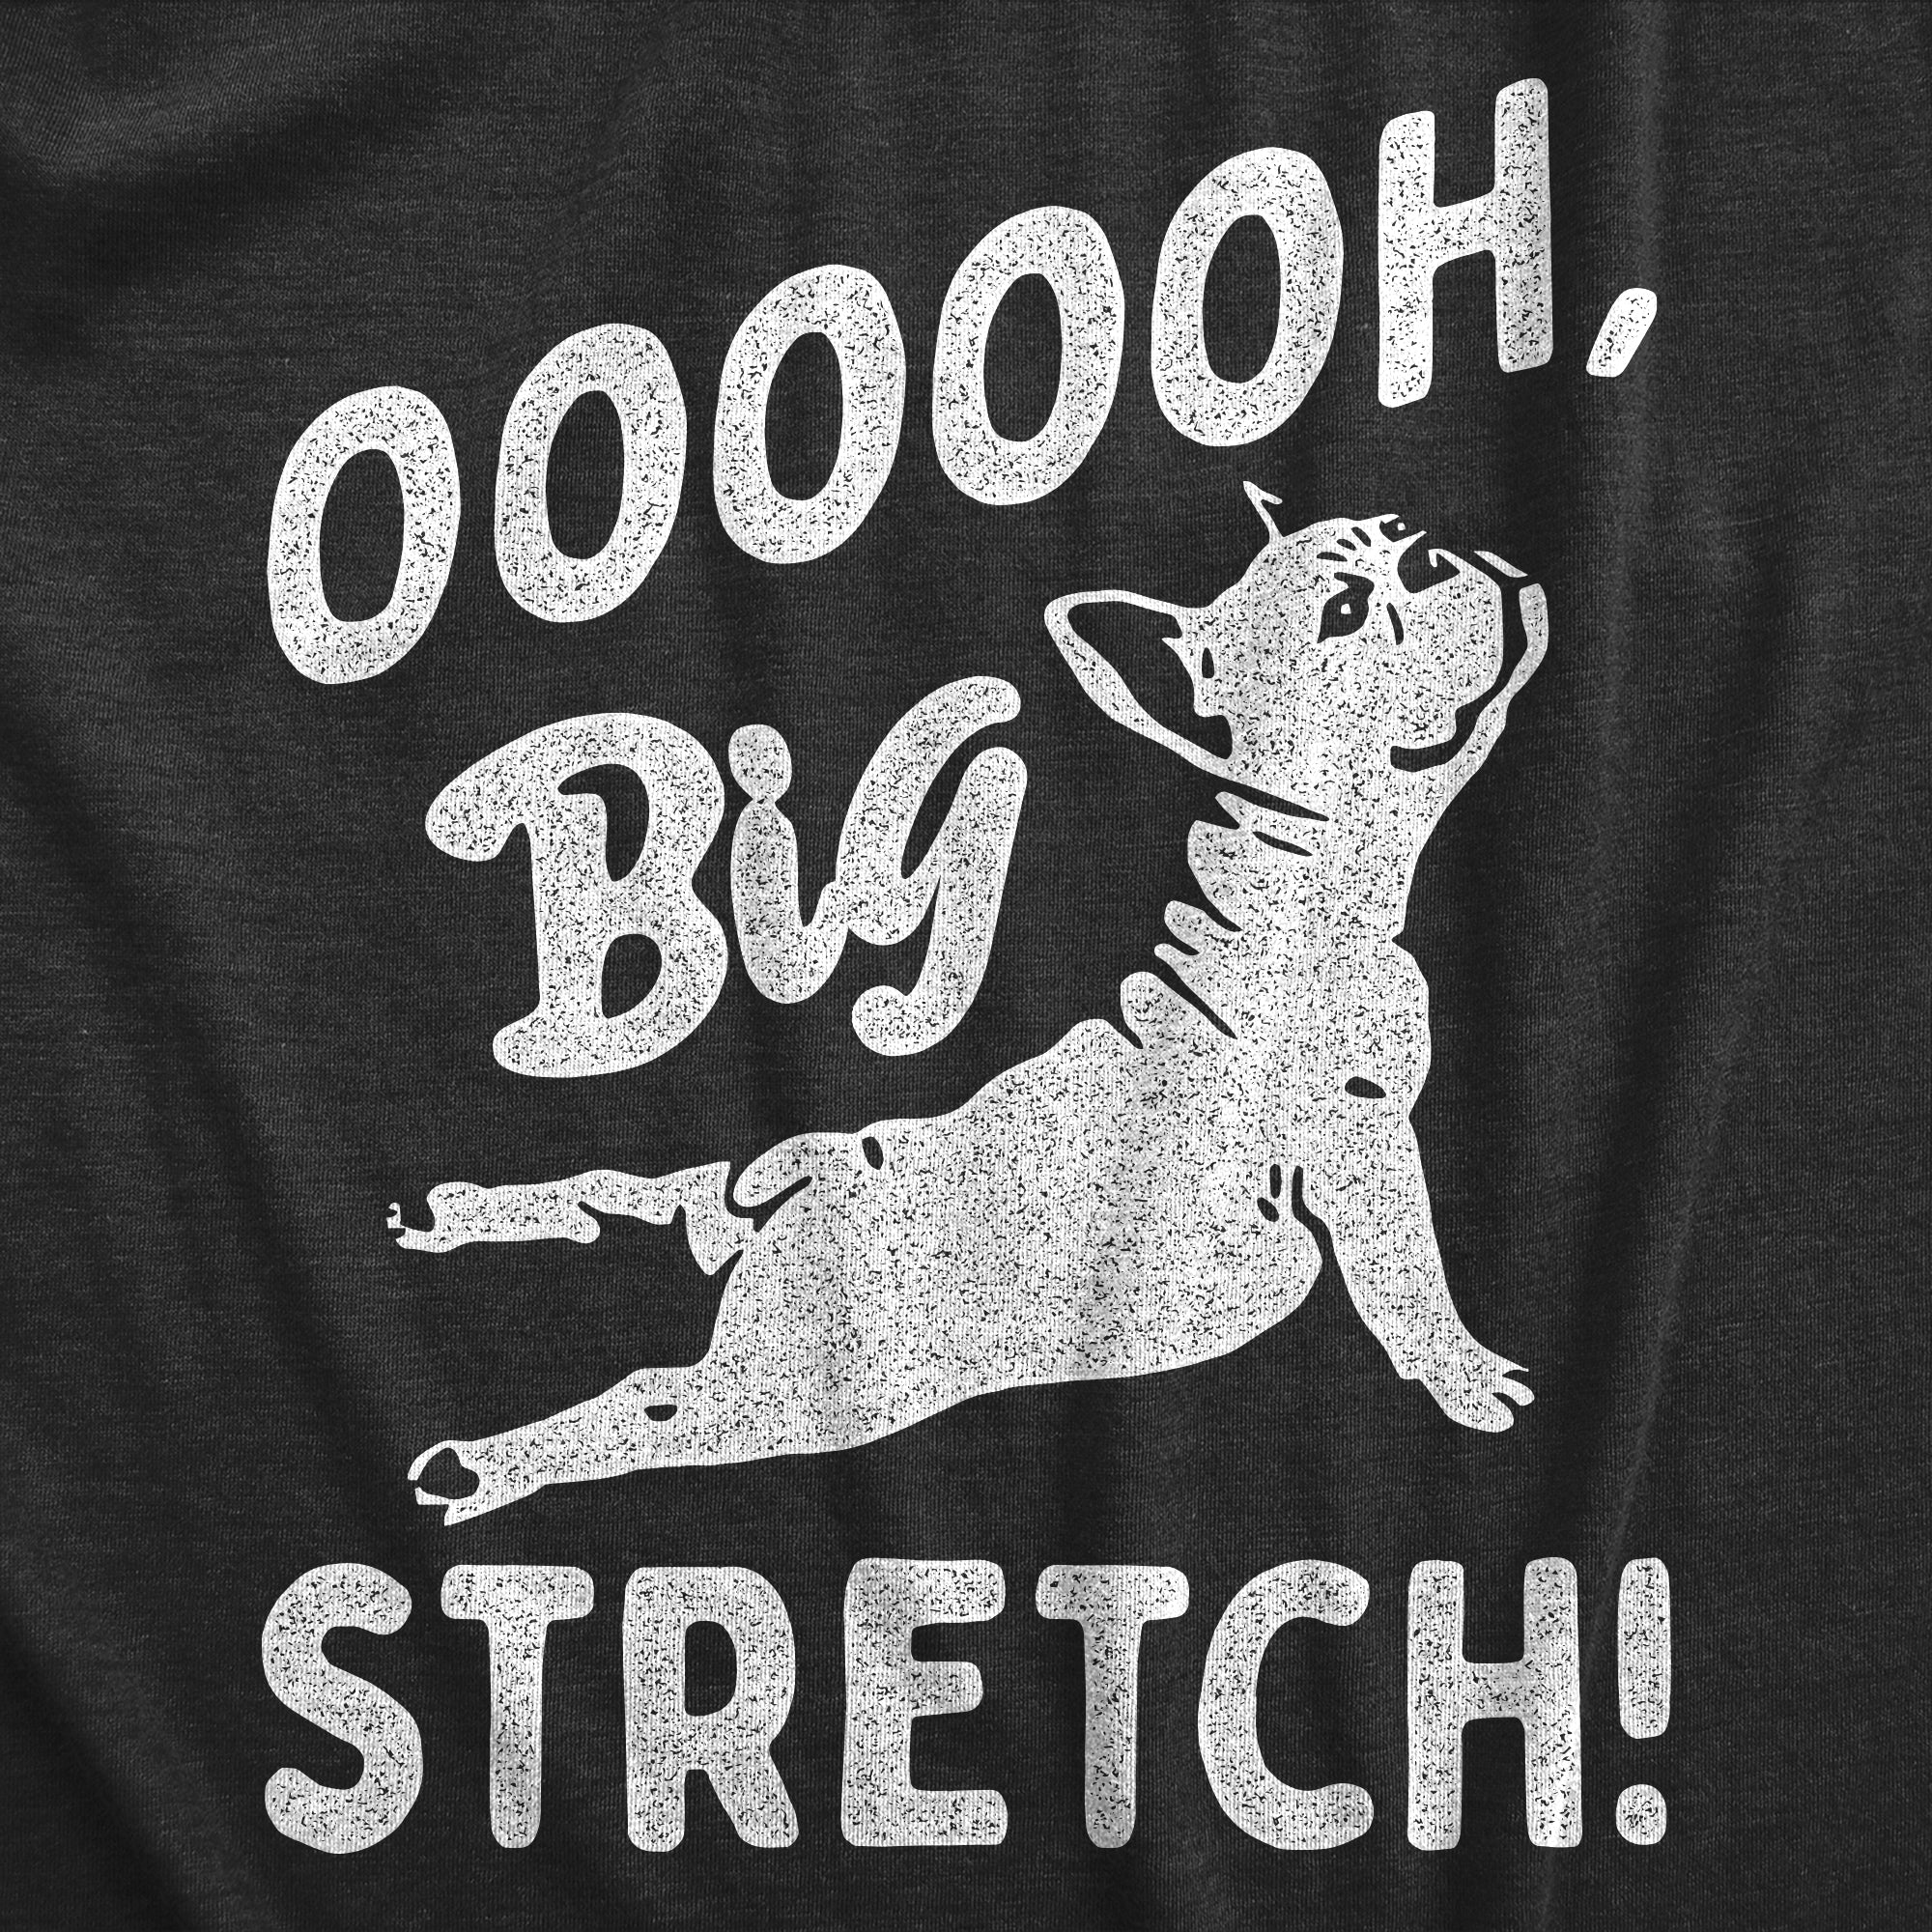 Funny Heather Black - STRETCH OOOOOH Big Stretch Dog Womens T Shirt Nerdy Dog Tee